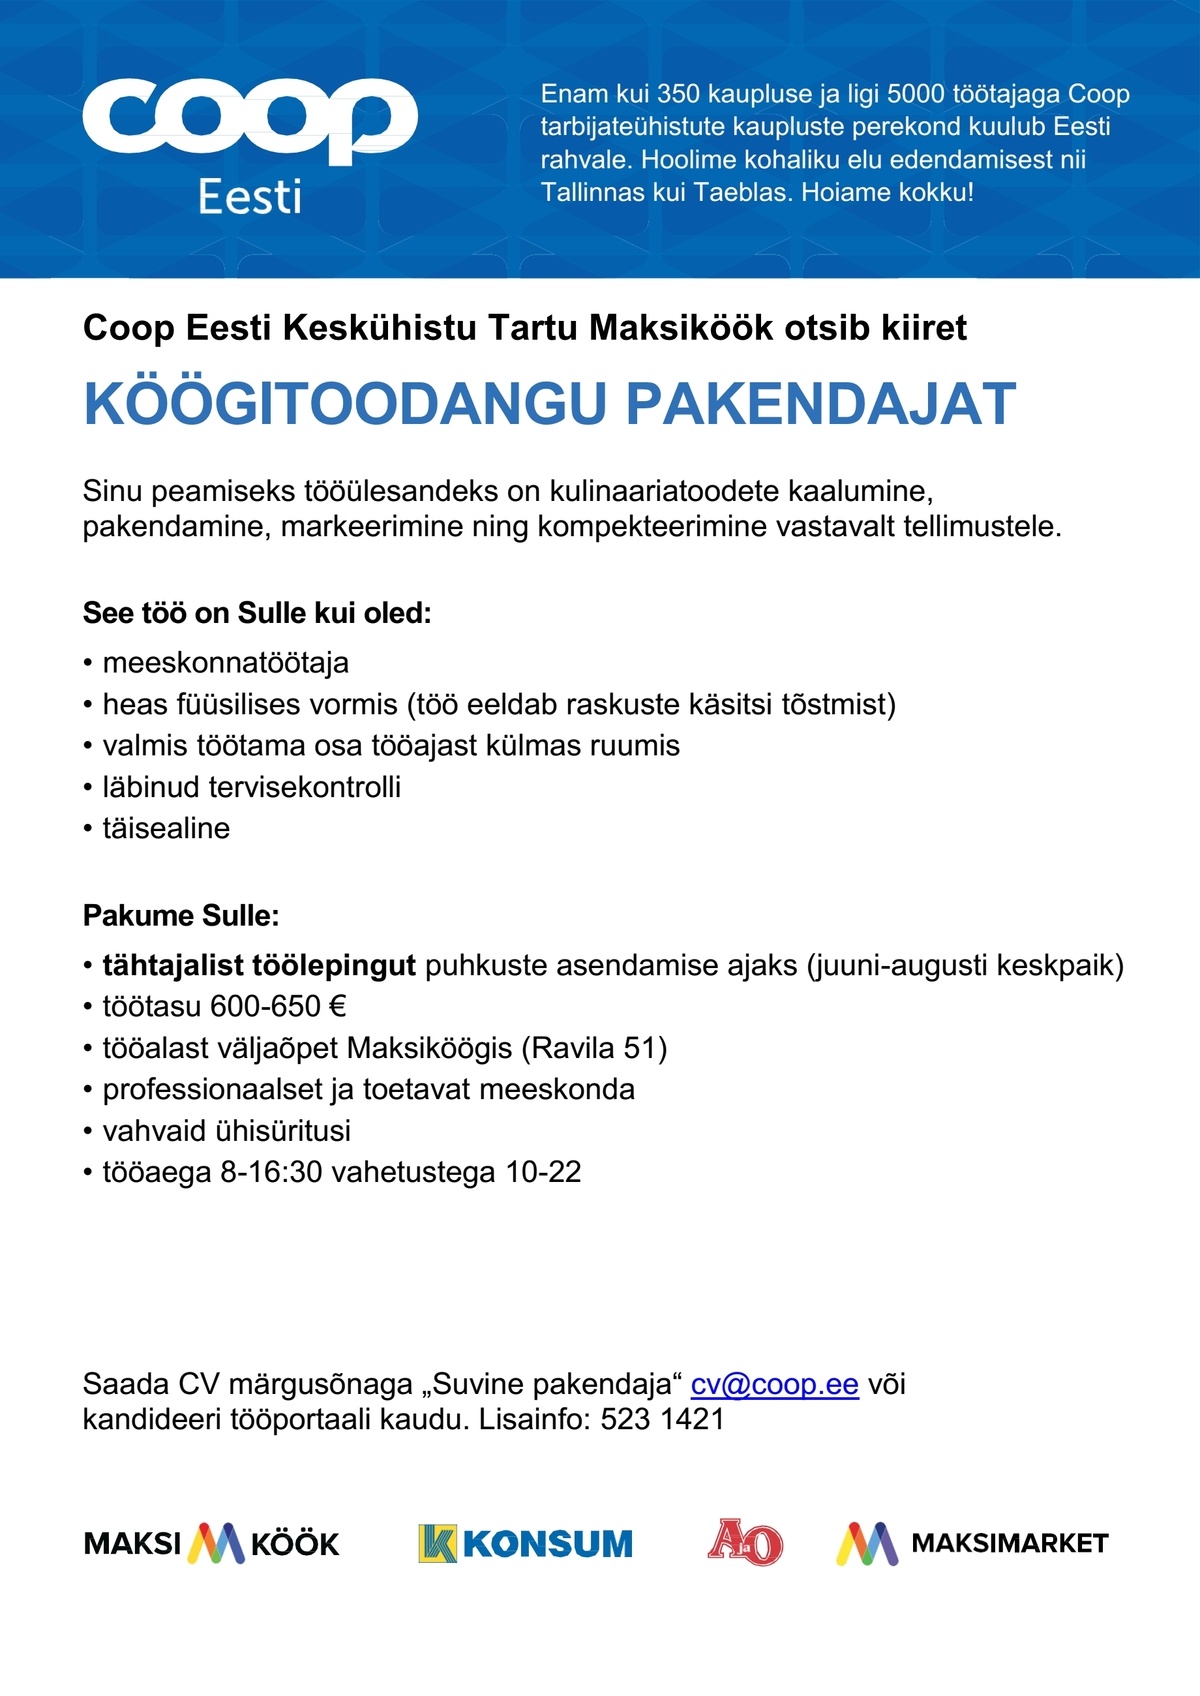 Coop Eesti Keskühistu Pakendaja (Maksiköök - tähtajaline)